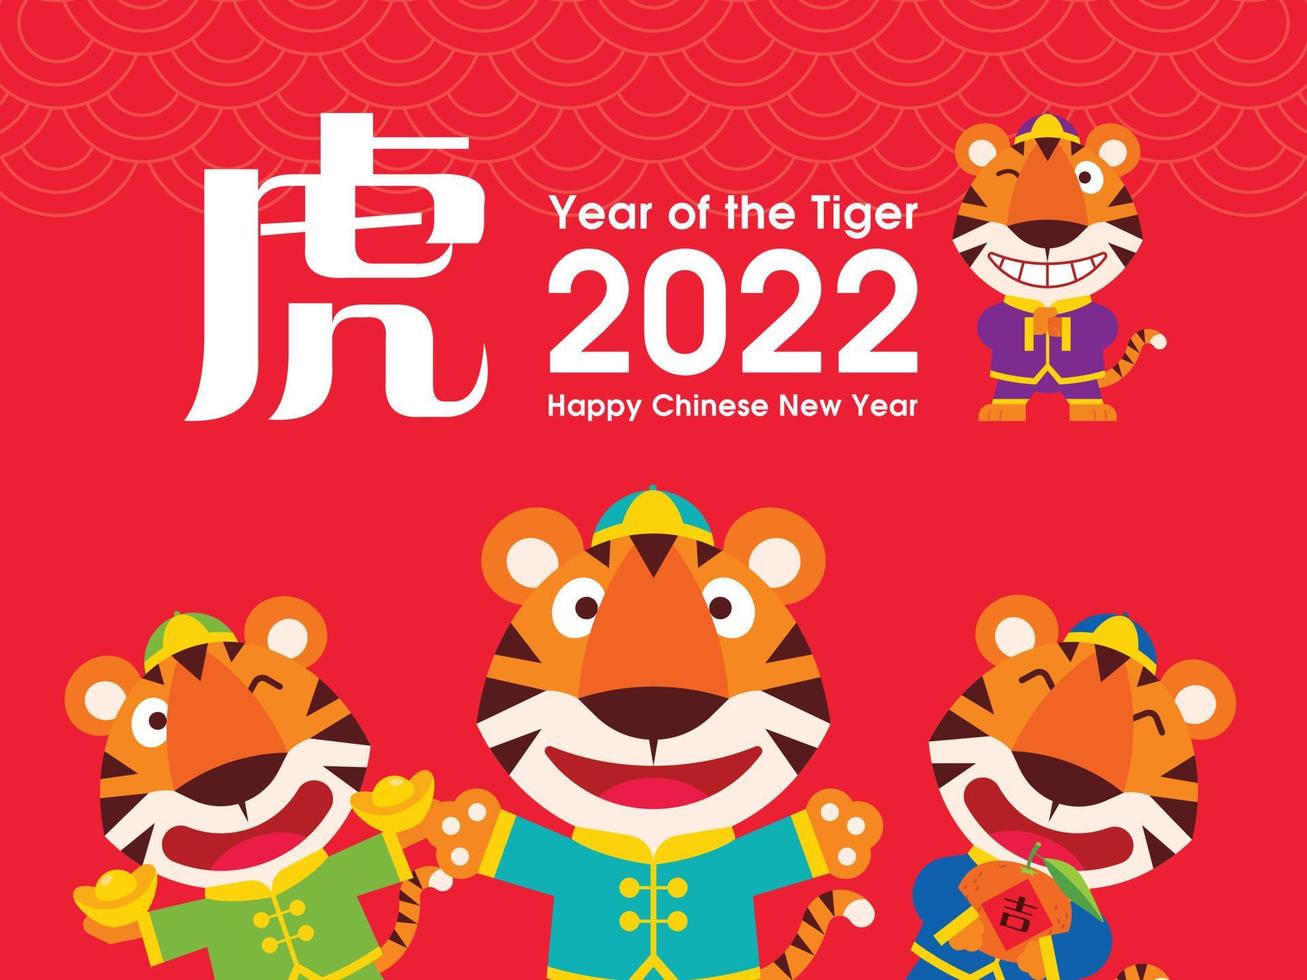 tigres lindos zodíaco del año nuevo chino 202. dibujos animados lindos tigres en traje tradicional ahuecando la mano en saludo, sosteniendo lingotes de oro y llevando mandarina vector